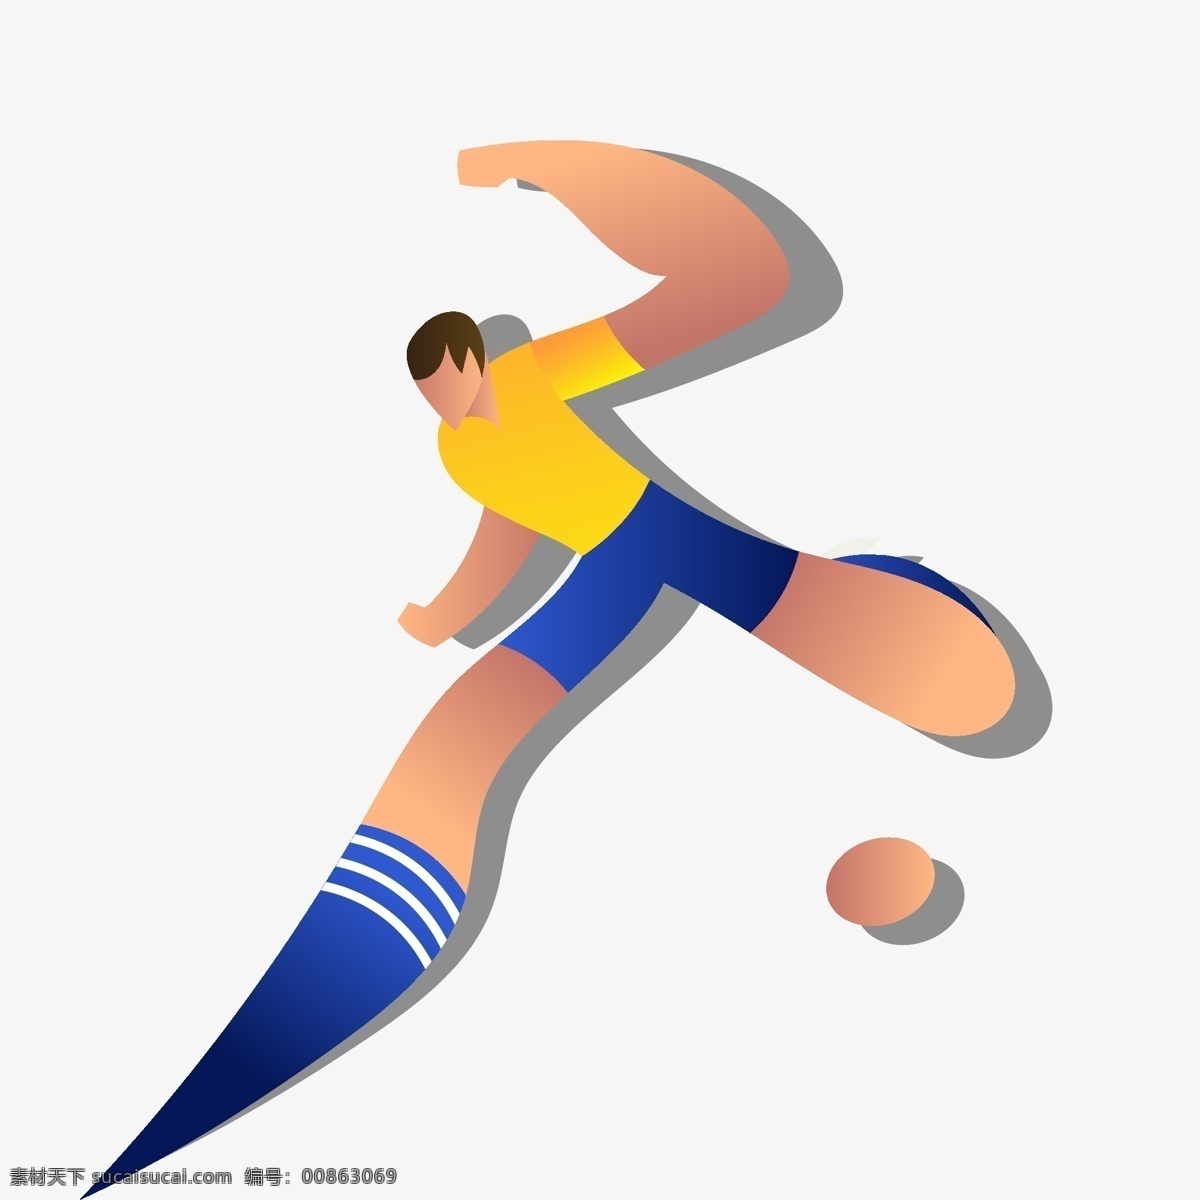 俄罗斯 世界杯 渐变 卡通 运球 人物 矢量 图案 2018 足球 欧冠 矢量足球 冠军 教练 球队 足球装饰 装饰图案 矢量装饰 足球风